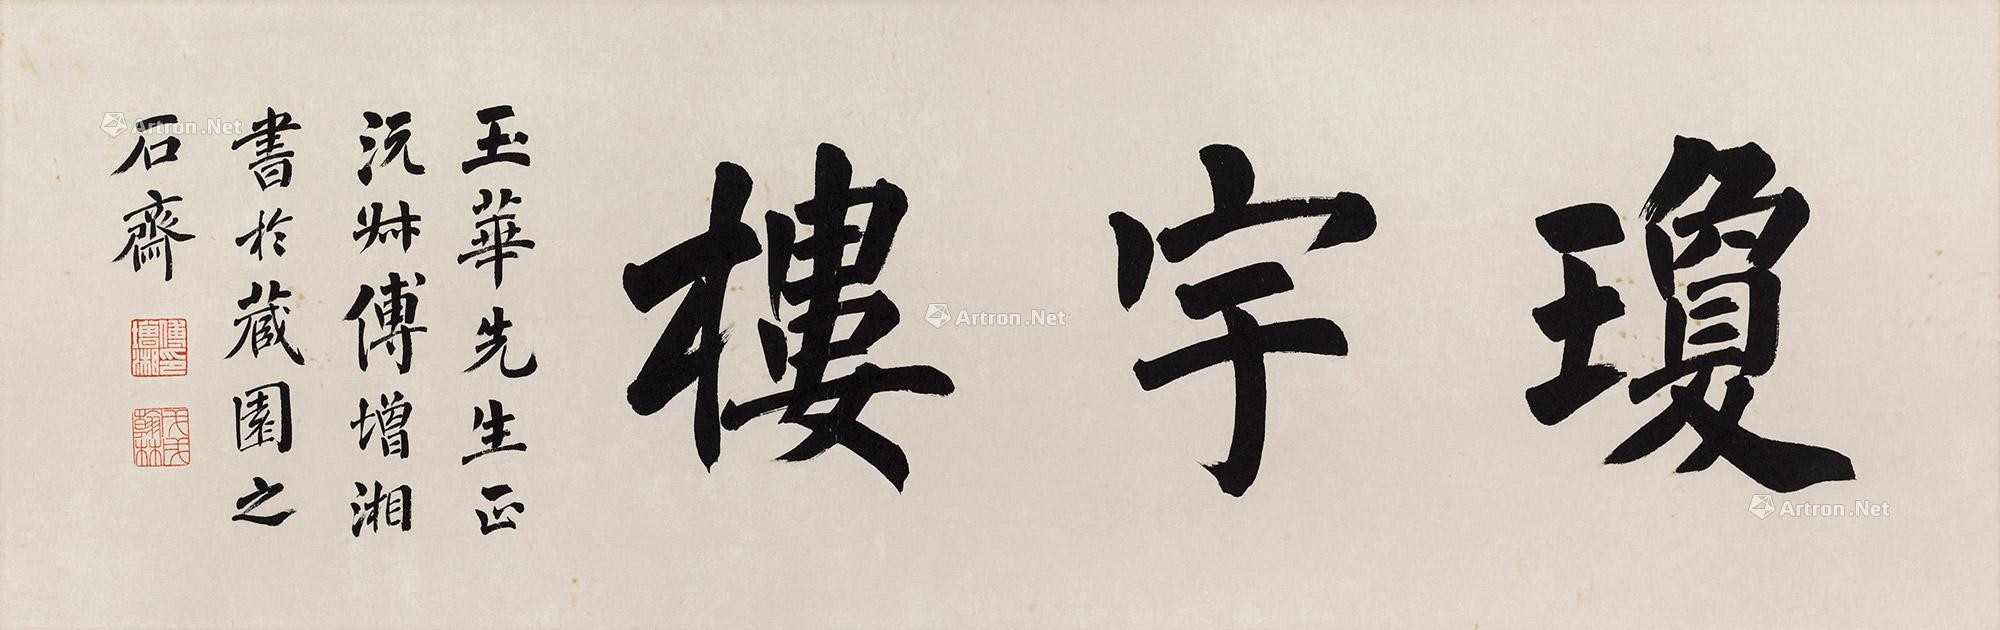 Calligraphy in Regular Script